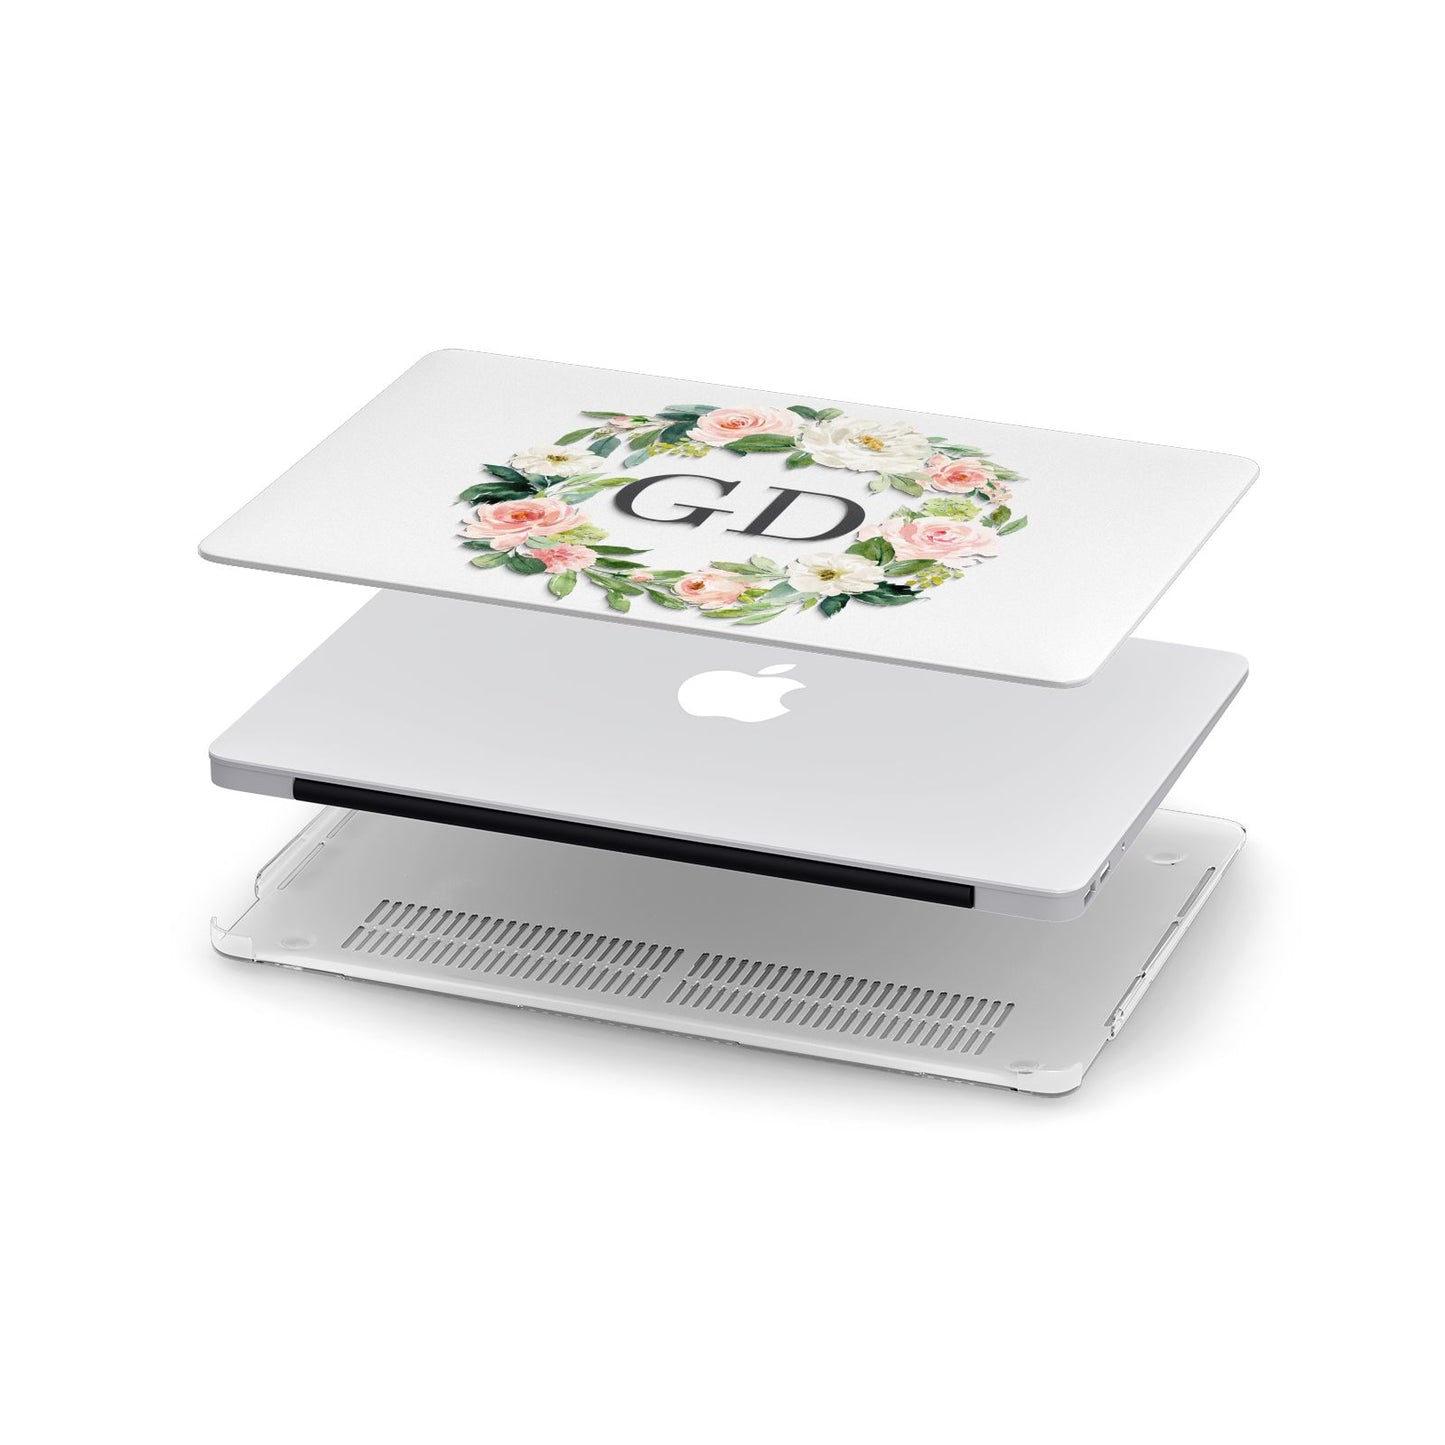 Personalised floral wreath Apple MacBook Case in Detail